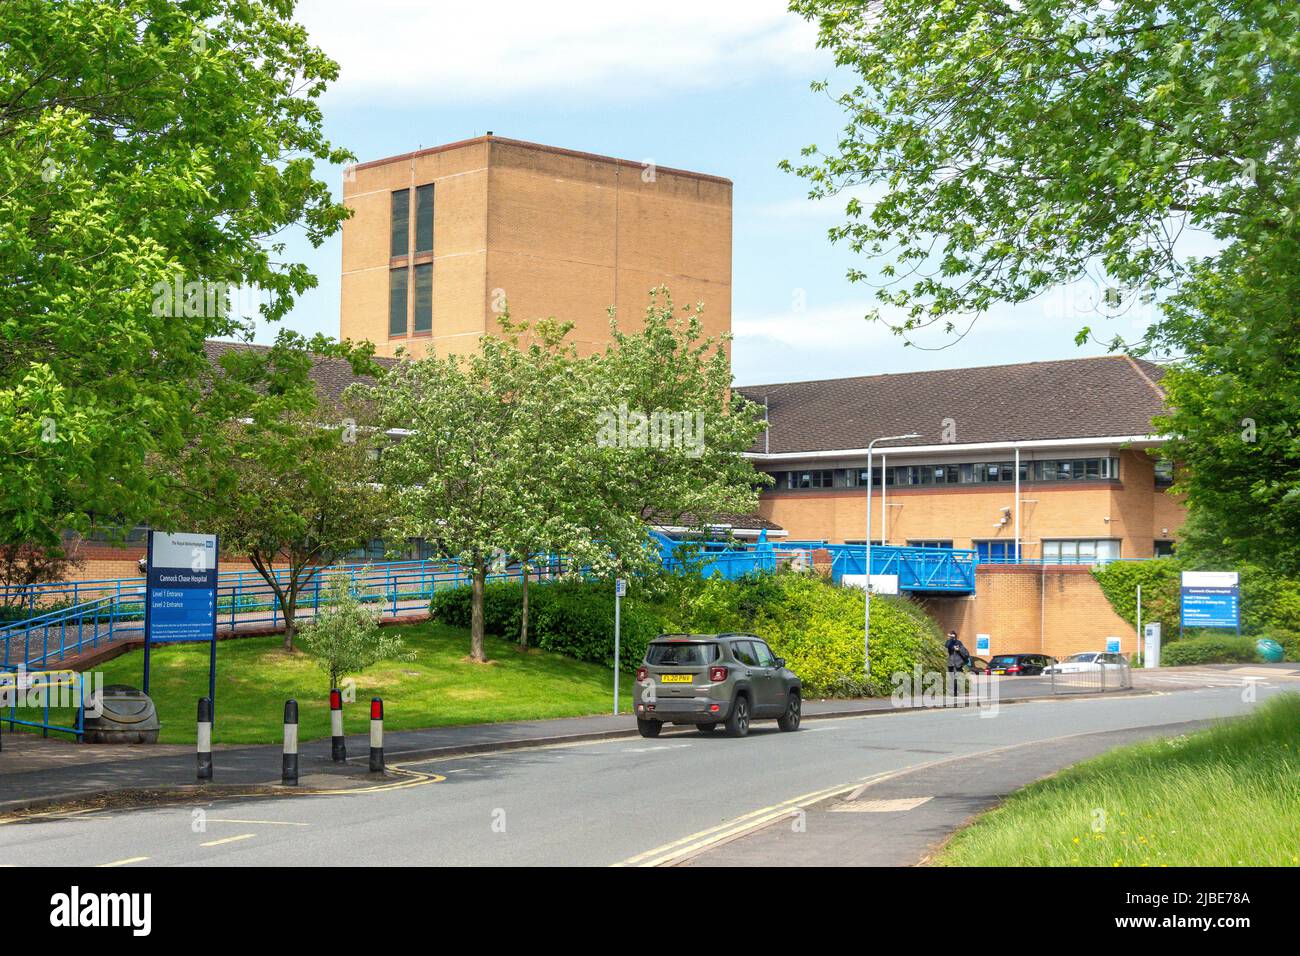 Cannock Chase NHS Hospital, Brunswick Road, Cannock, Staffordshire, England, United Kingdom Stock Photo